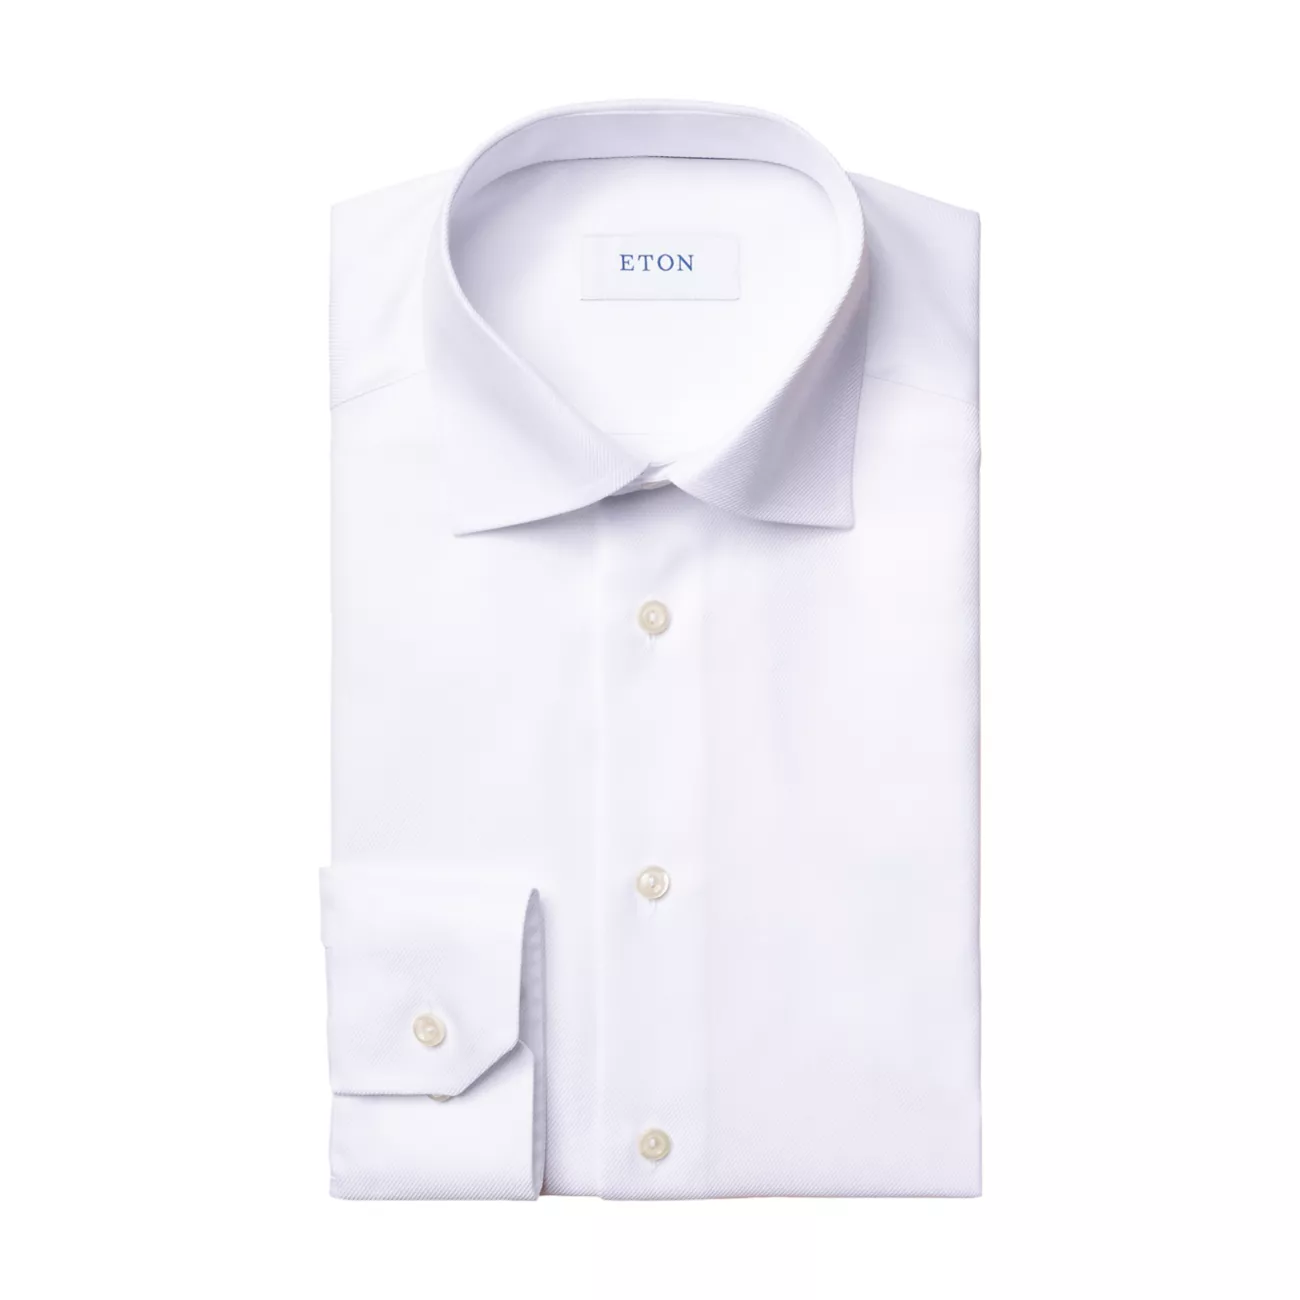 Жаккардовая классическая рубашка с диагональю современного кроя Eton